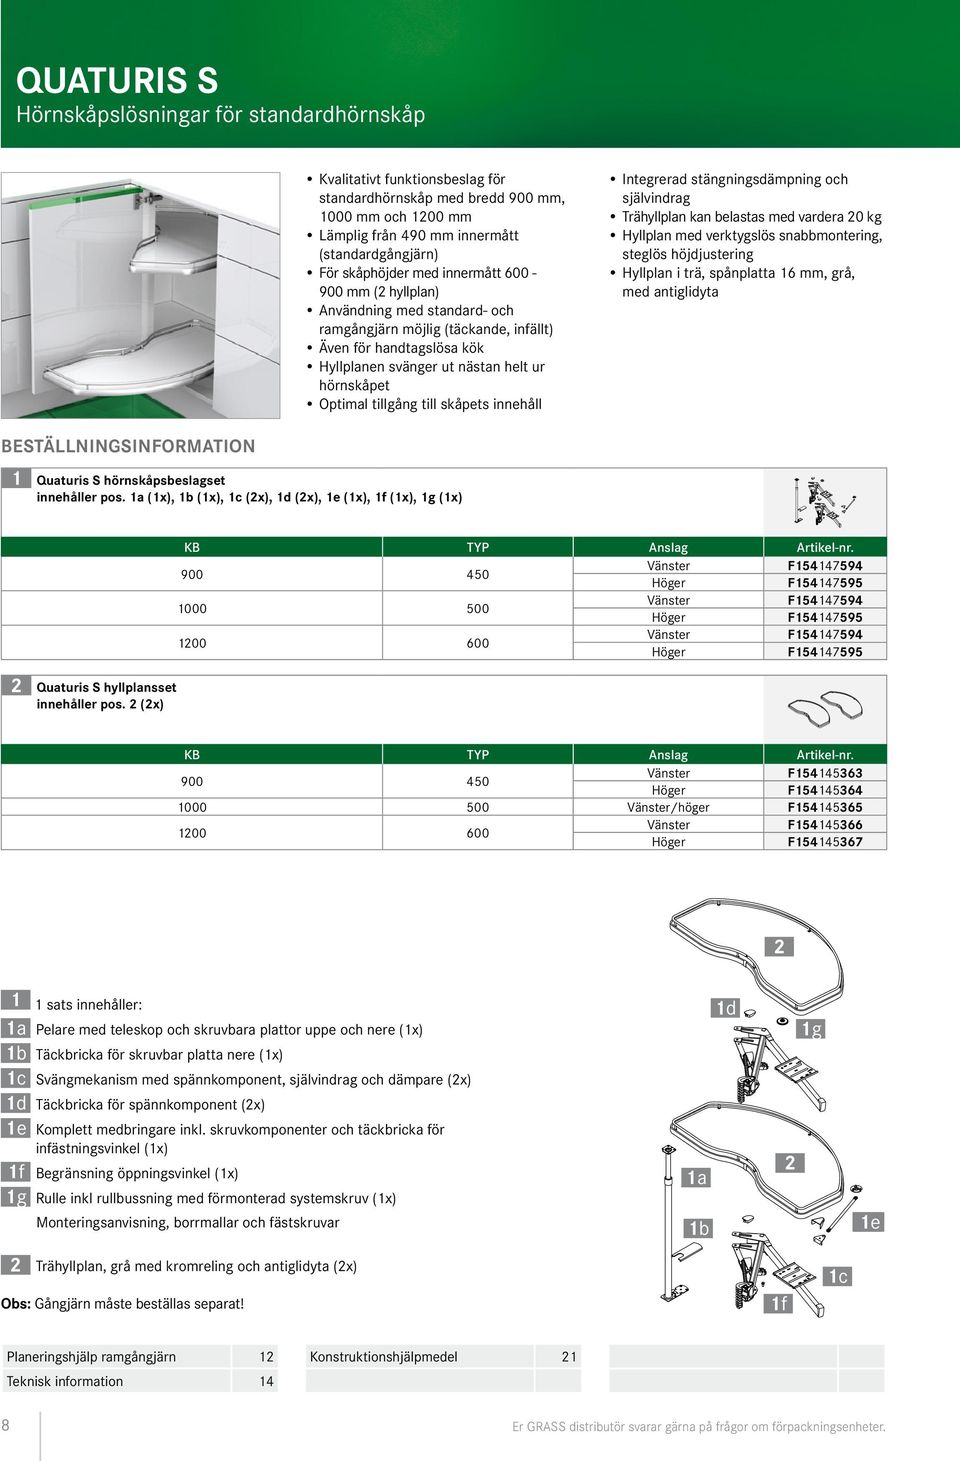 . Kvalitativt funktionsbeslag för standardhörnskåp med bredd 900 mm, 1000 mm och 1200 mm Lämplig från 490 mm innermått (standardgångjärn) För skåphöjder med innermått 600-900 mm (2 hyllplan)